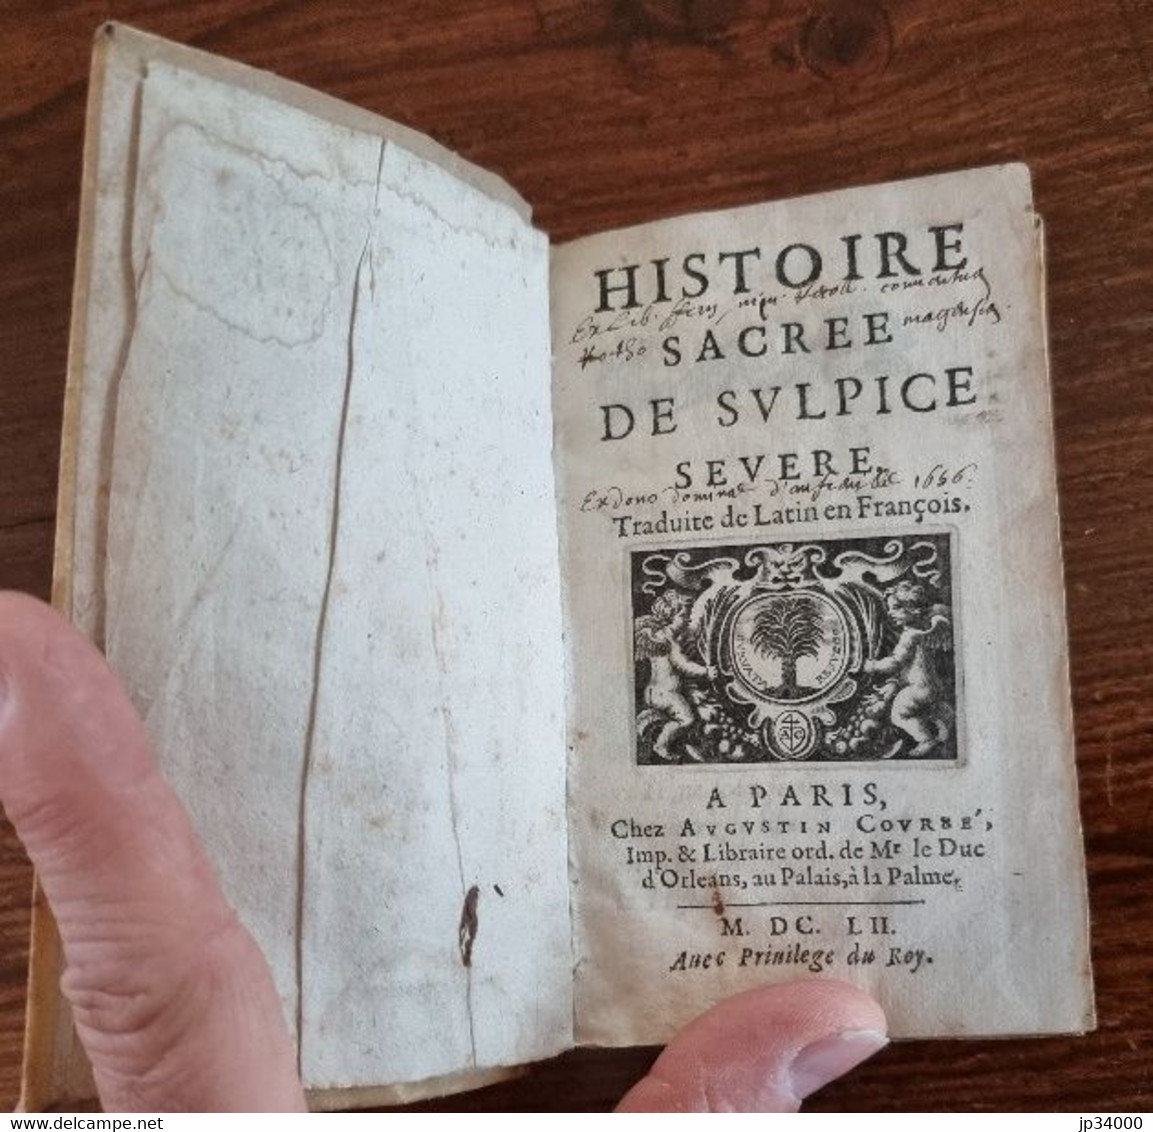 HISTOIRE SACRE DE SVLPICE SEVERE (Augustin Couree 1652) - Jusque 1700